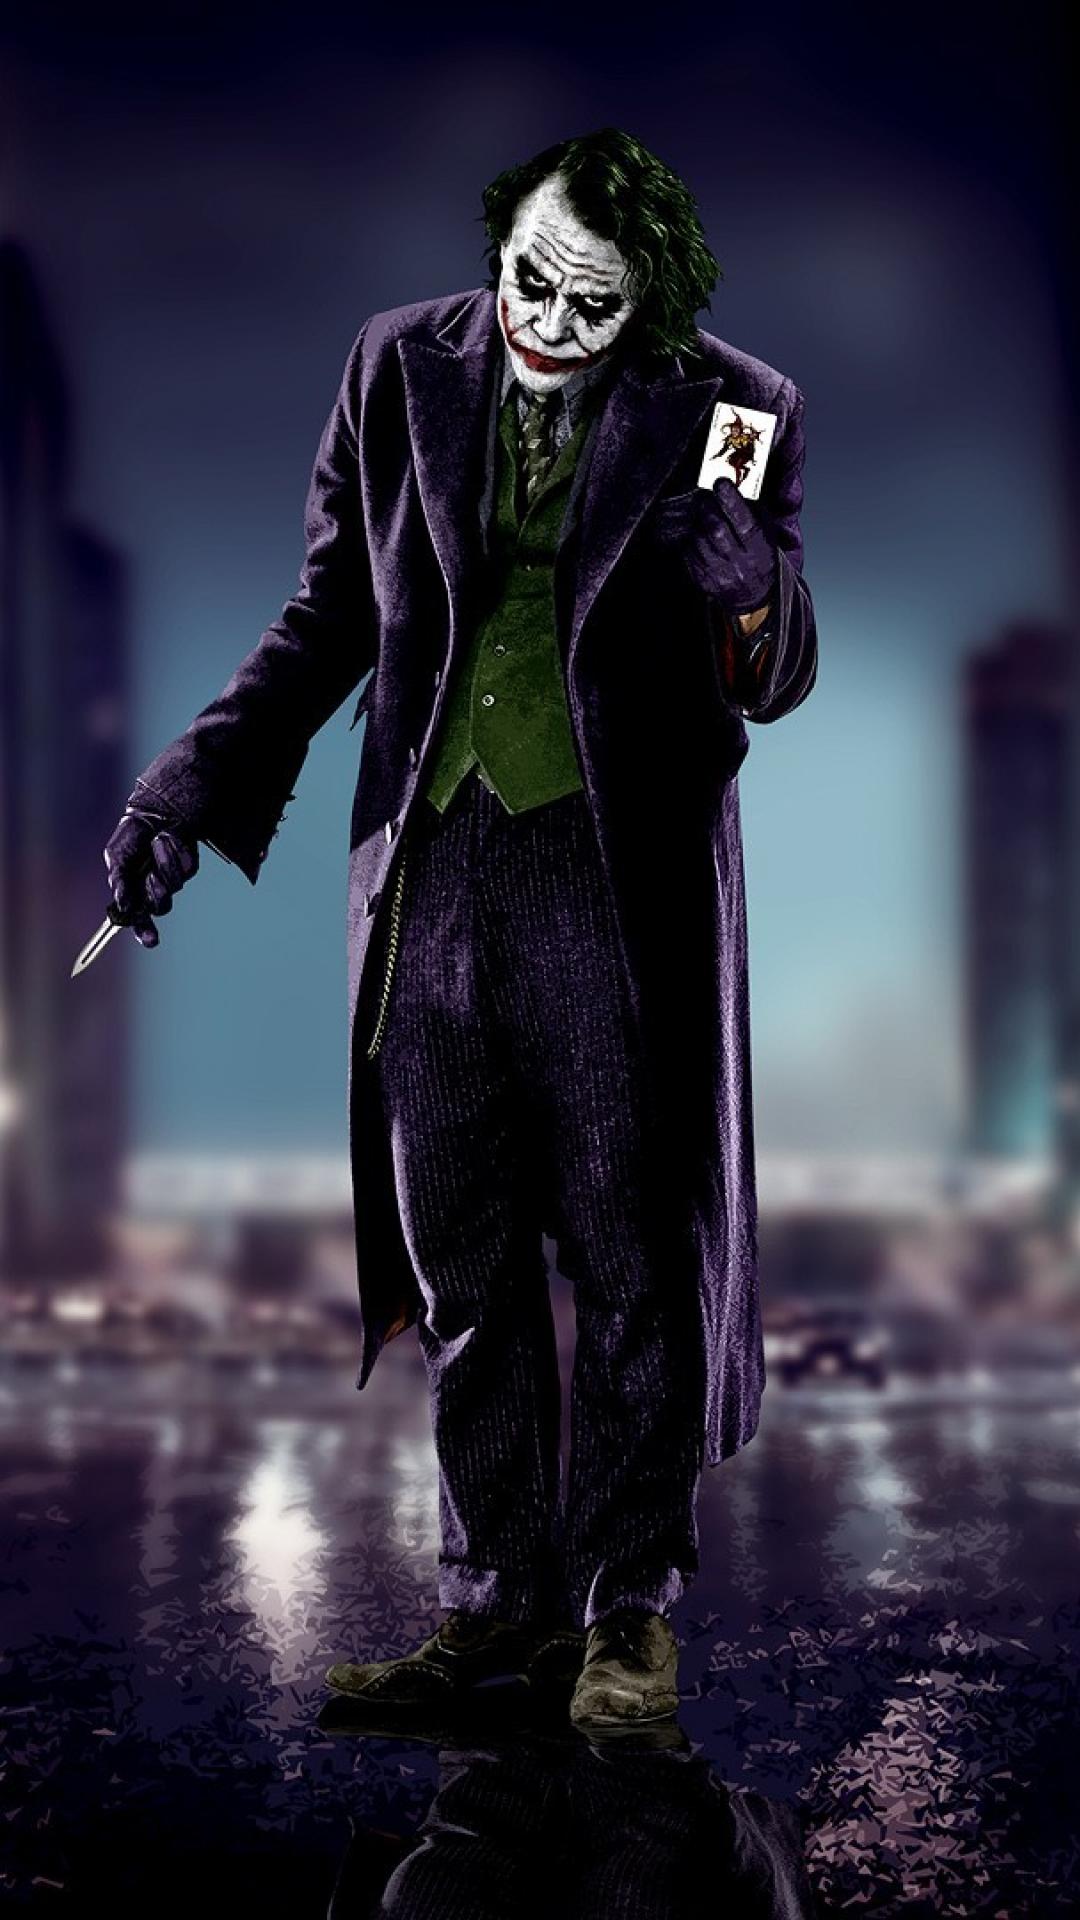 cavaliere oscuro joker wallpaper hd,supercattivo,burlone,personaggio fittizio,action figure